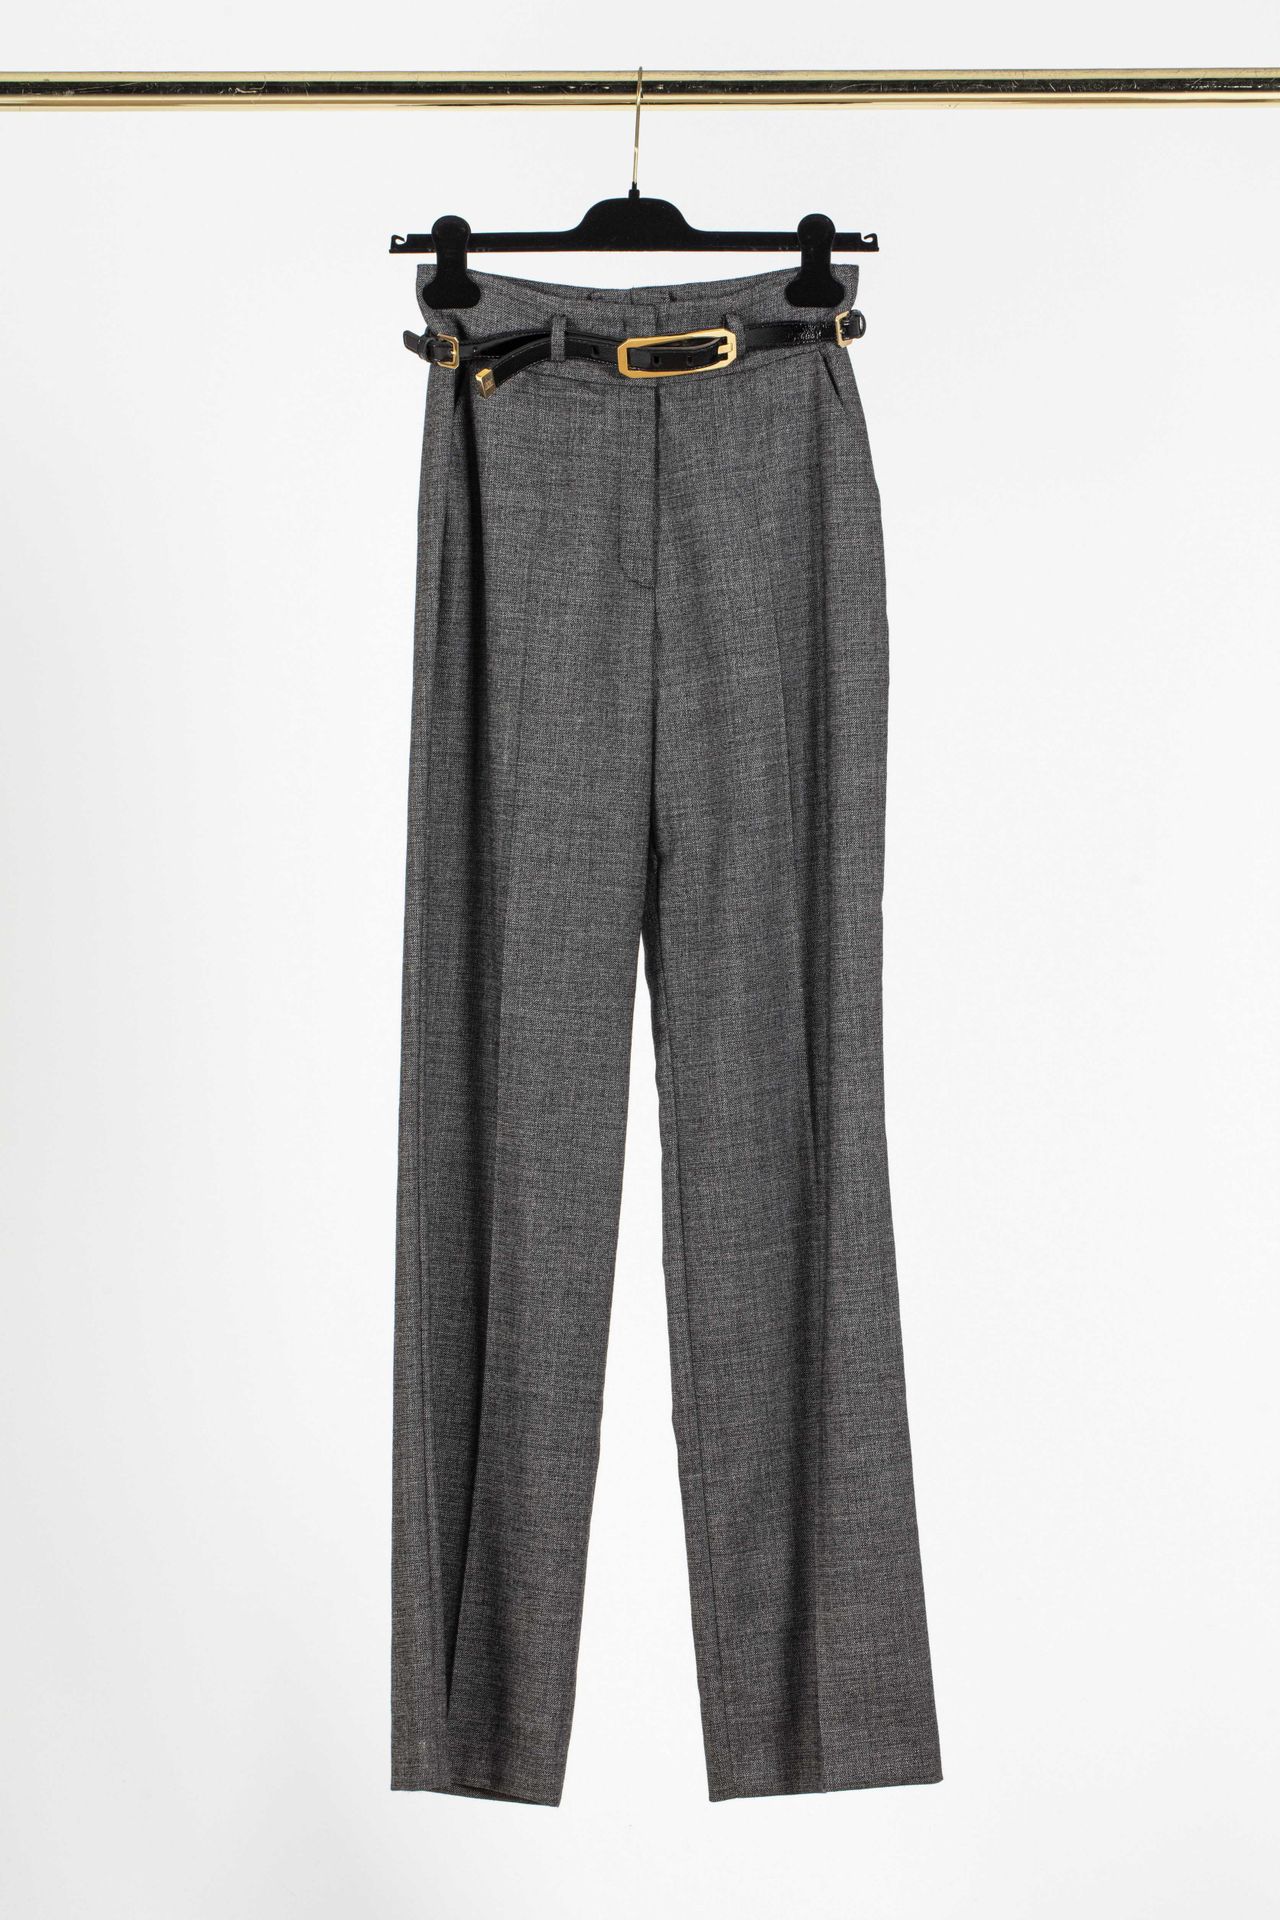 Null ESACADA : pantalon large en laine gris moucheté, avec une ceinture en cuir &hellip;